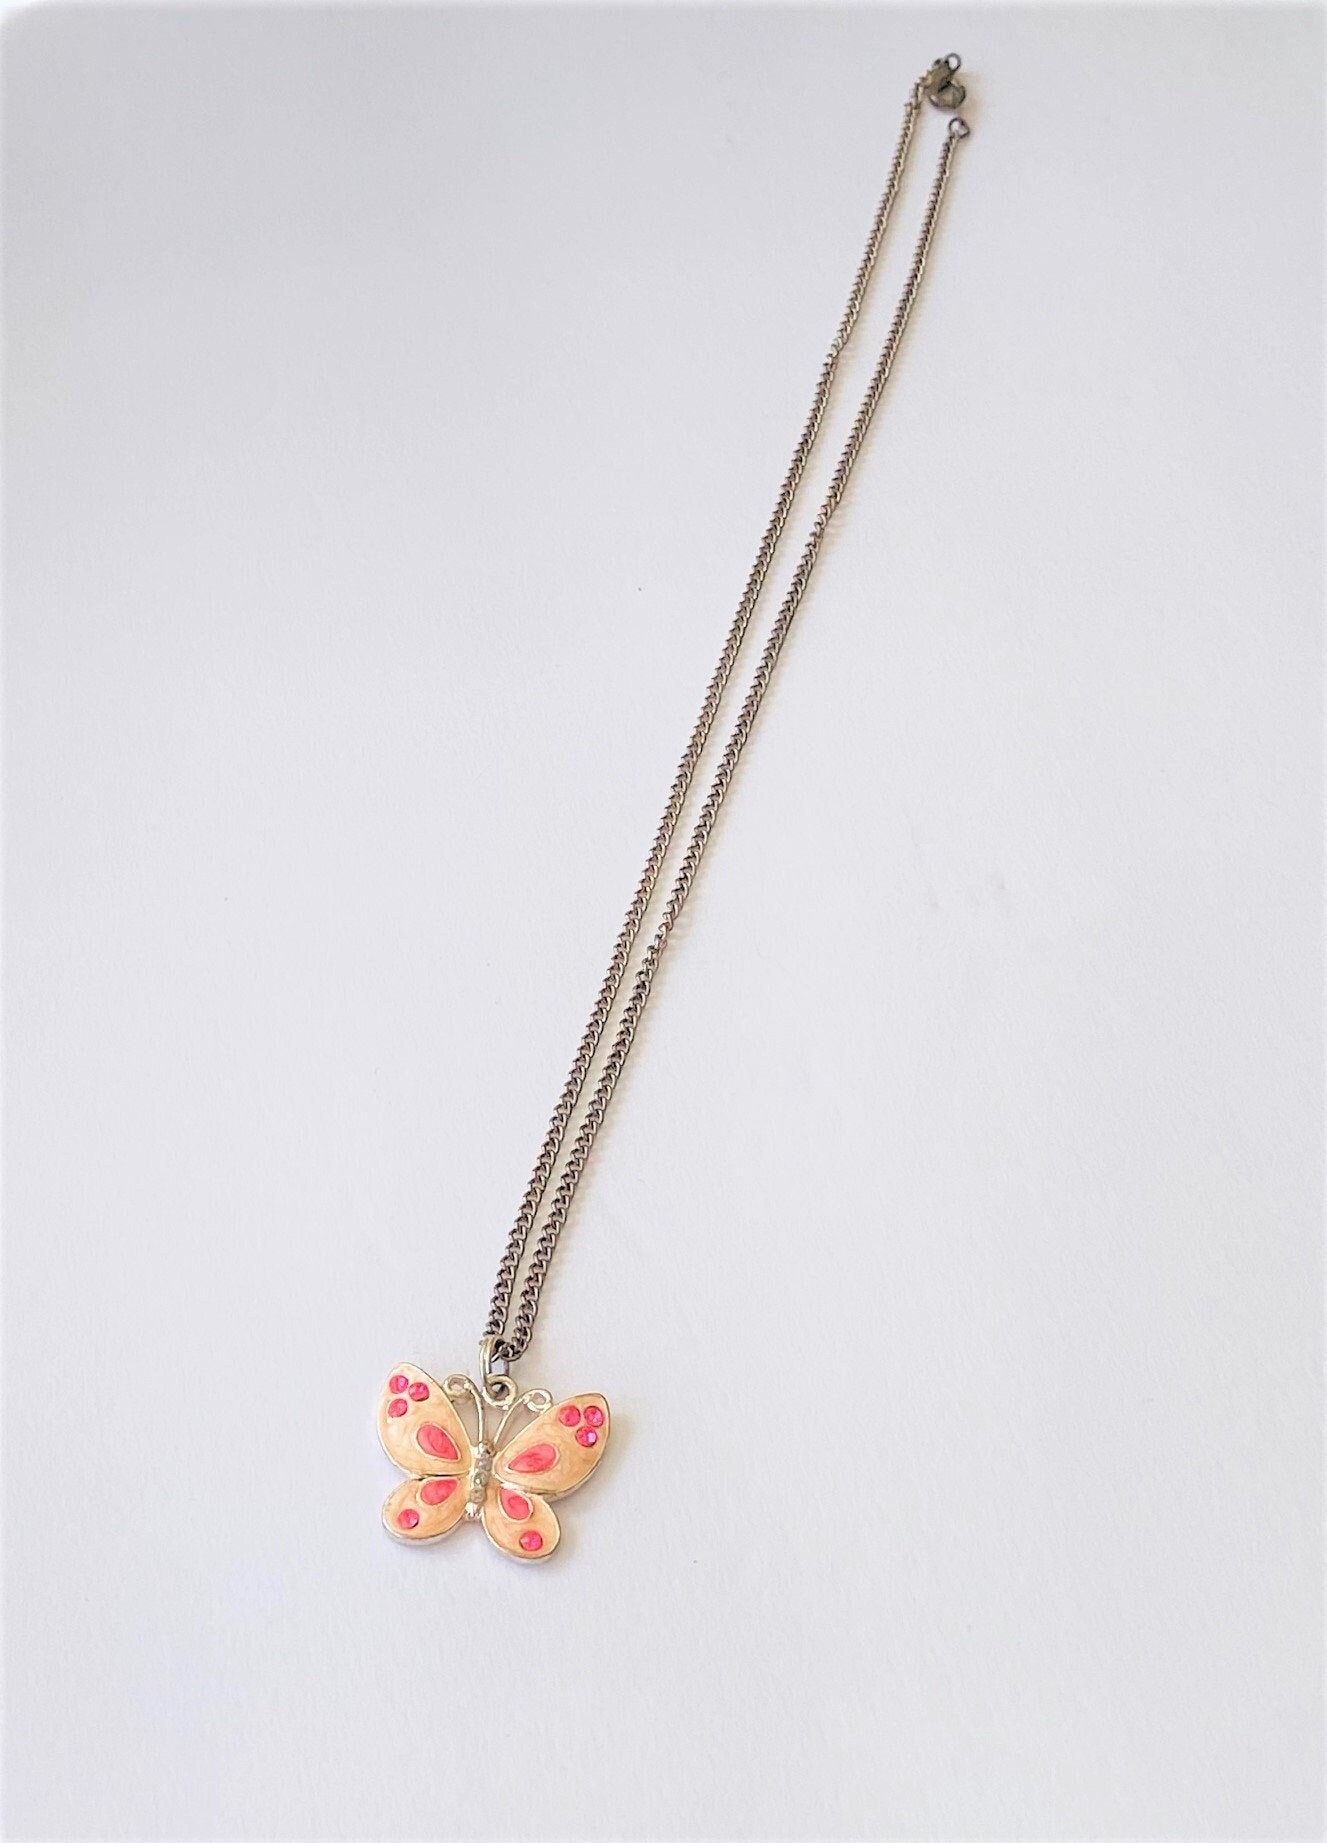 Vintage Enamel Butterfly Necklace - Etsy